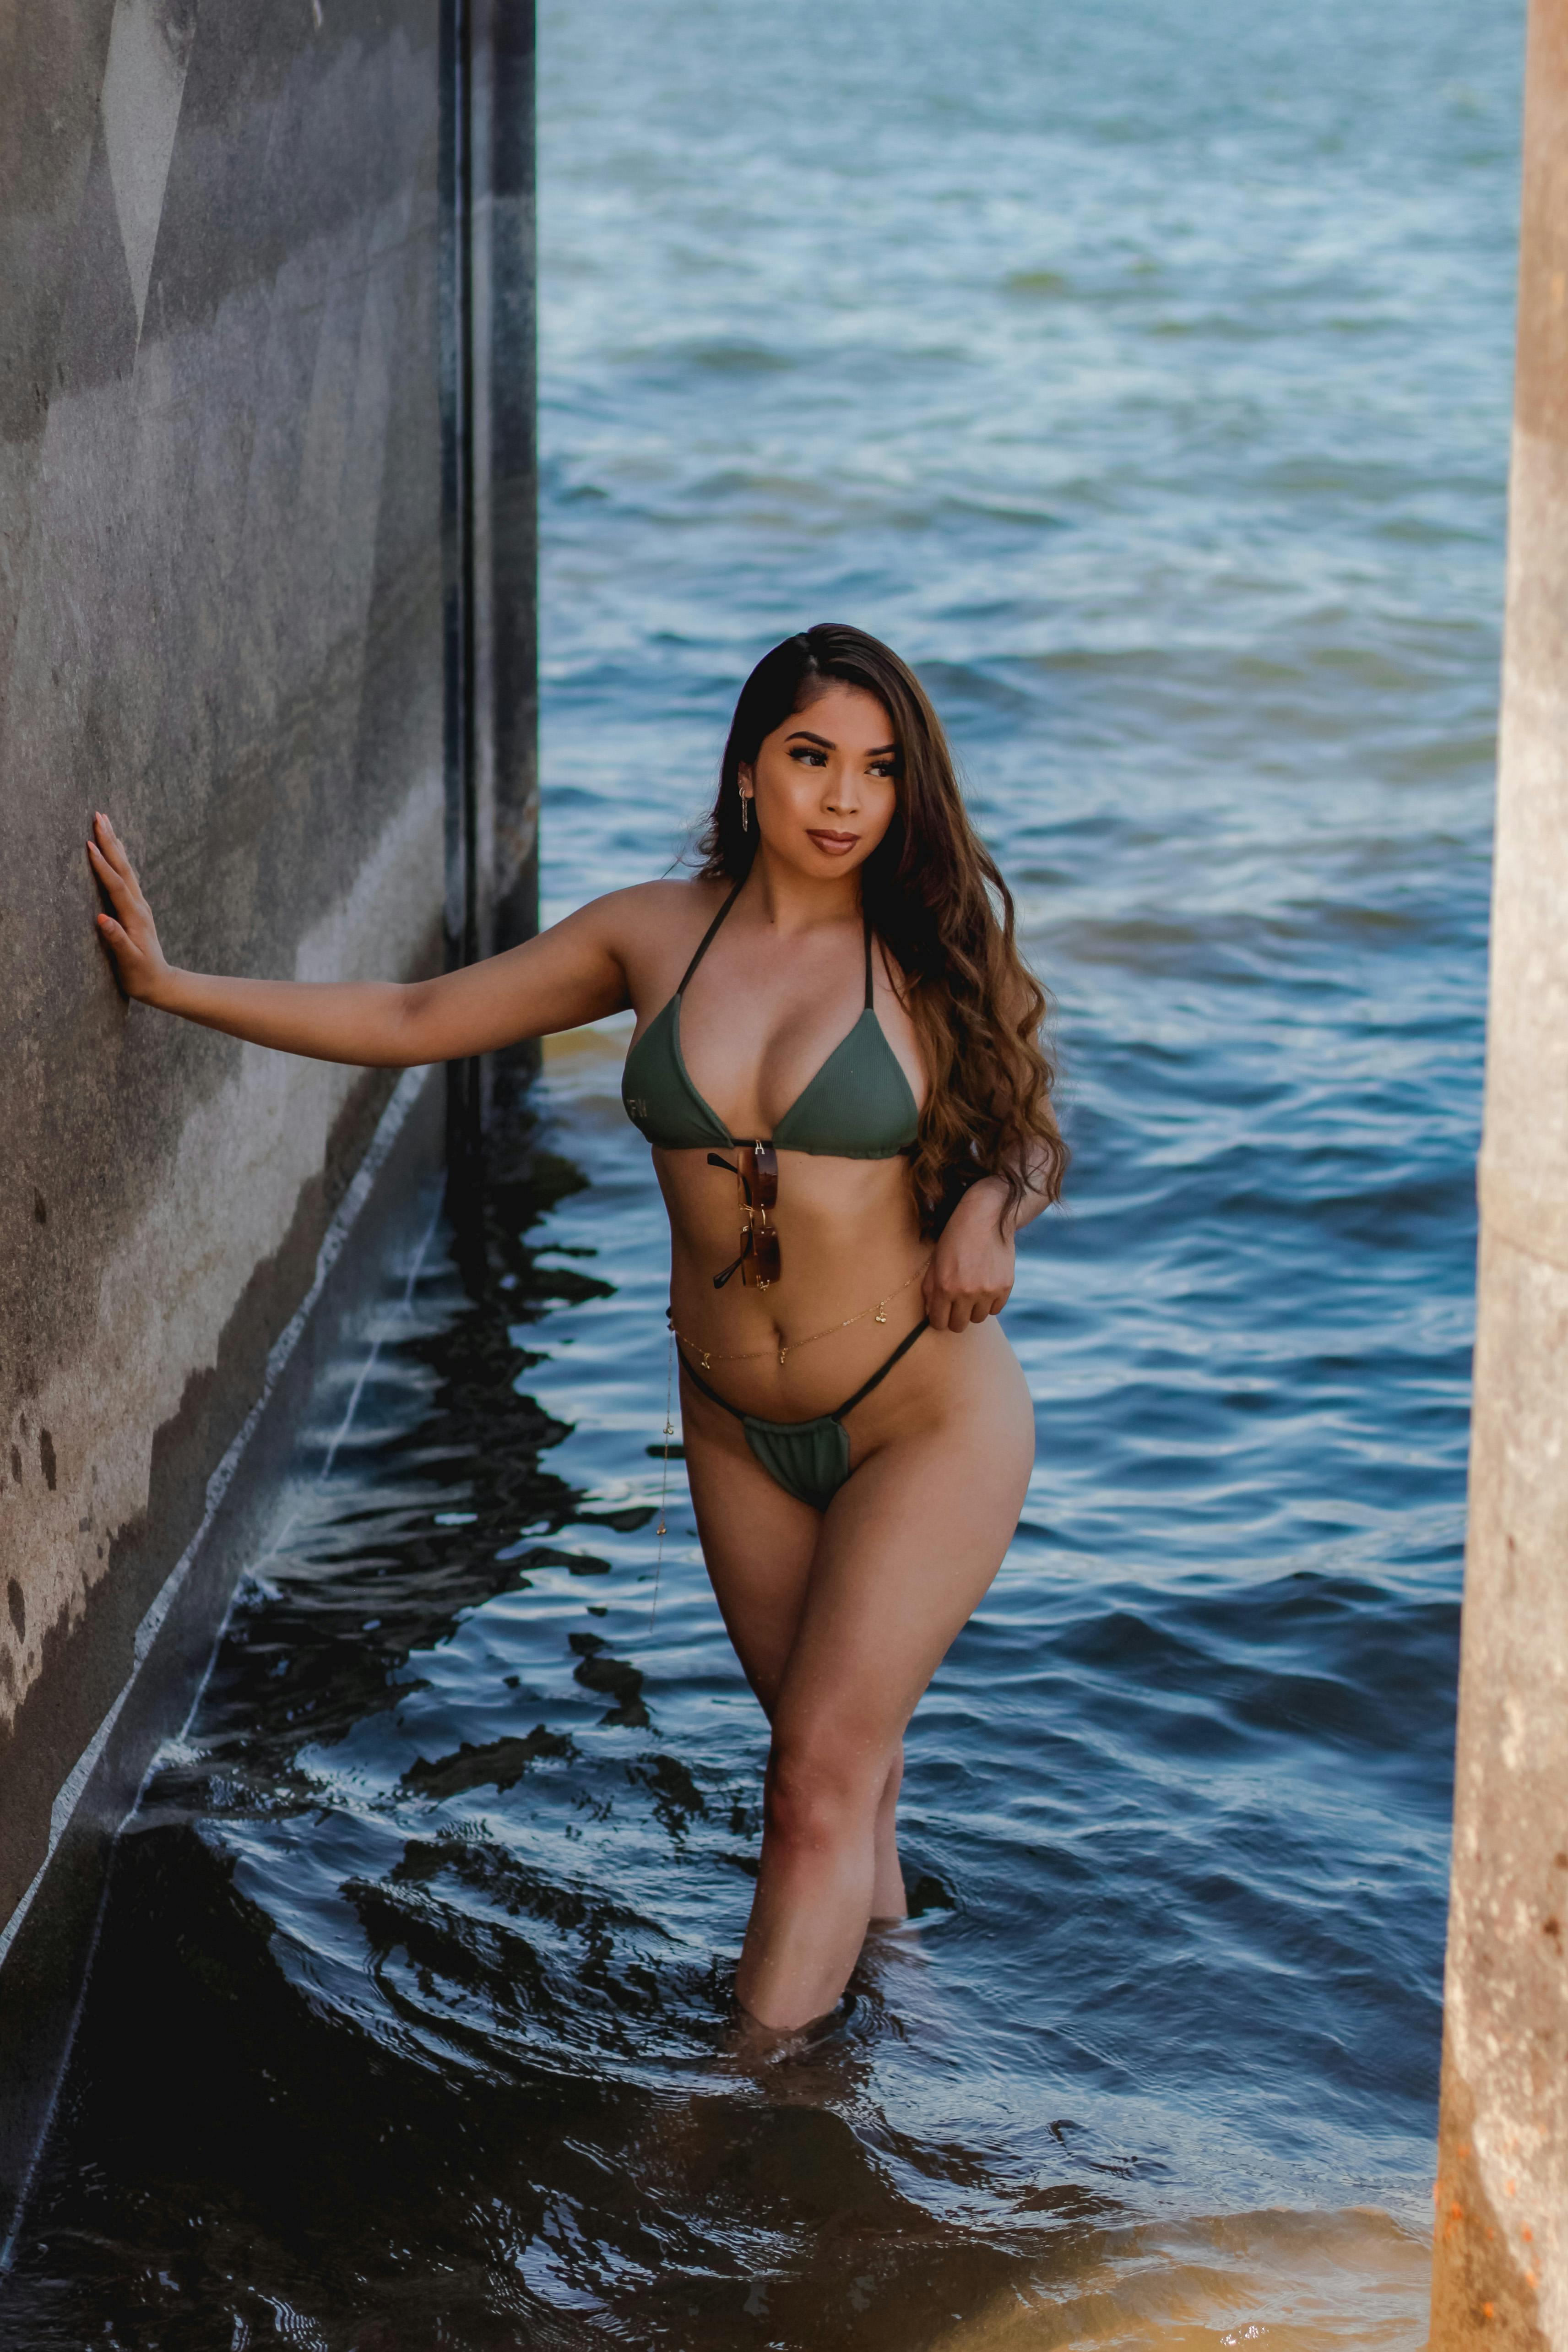 A Sexy Woman in Bikini Standing on Water · Free Stock Photo